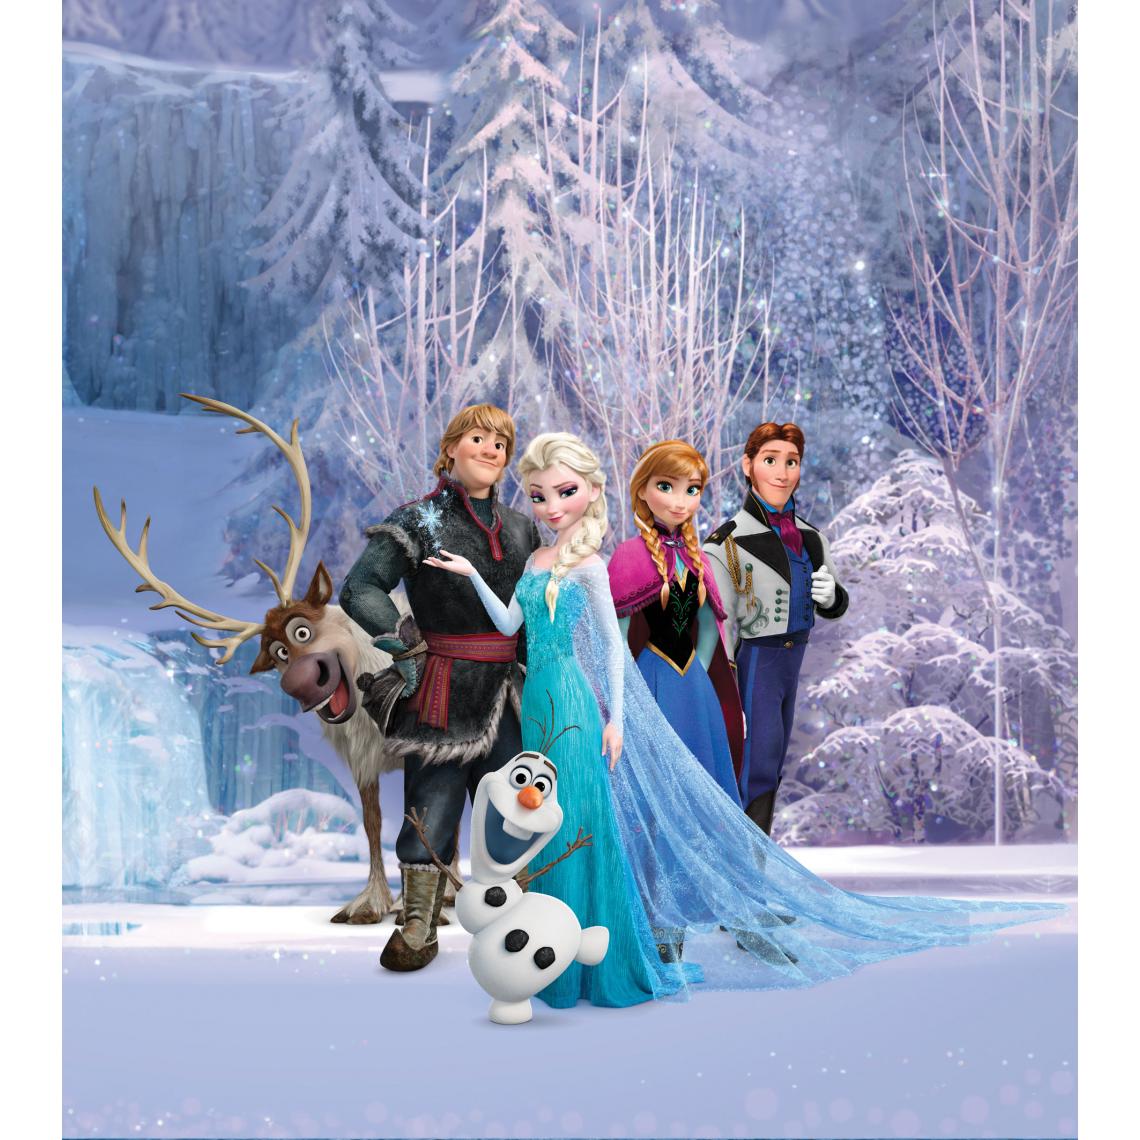 Disney Montres - Disney papier peint panoramique La Reine des neiges violet et bleu - 600620 - 180 x 202 cm - Papier peint